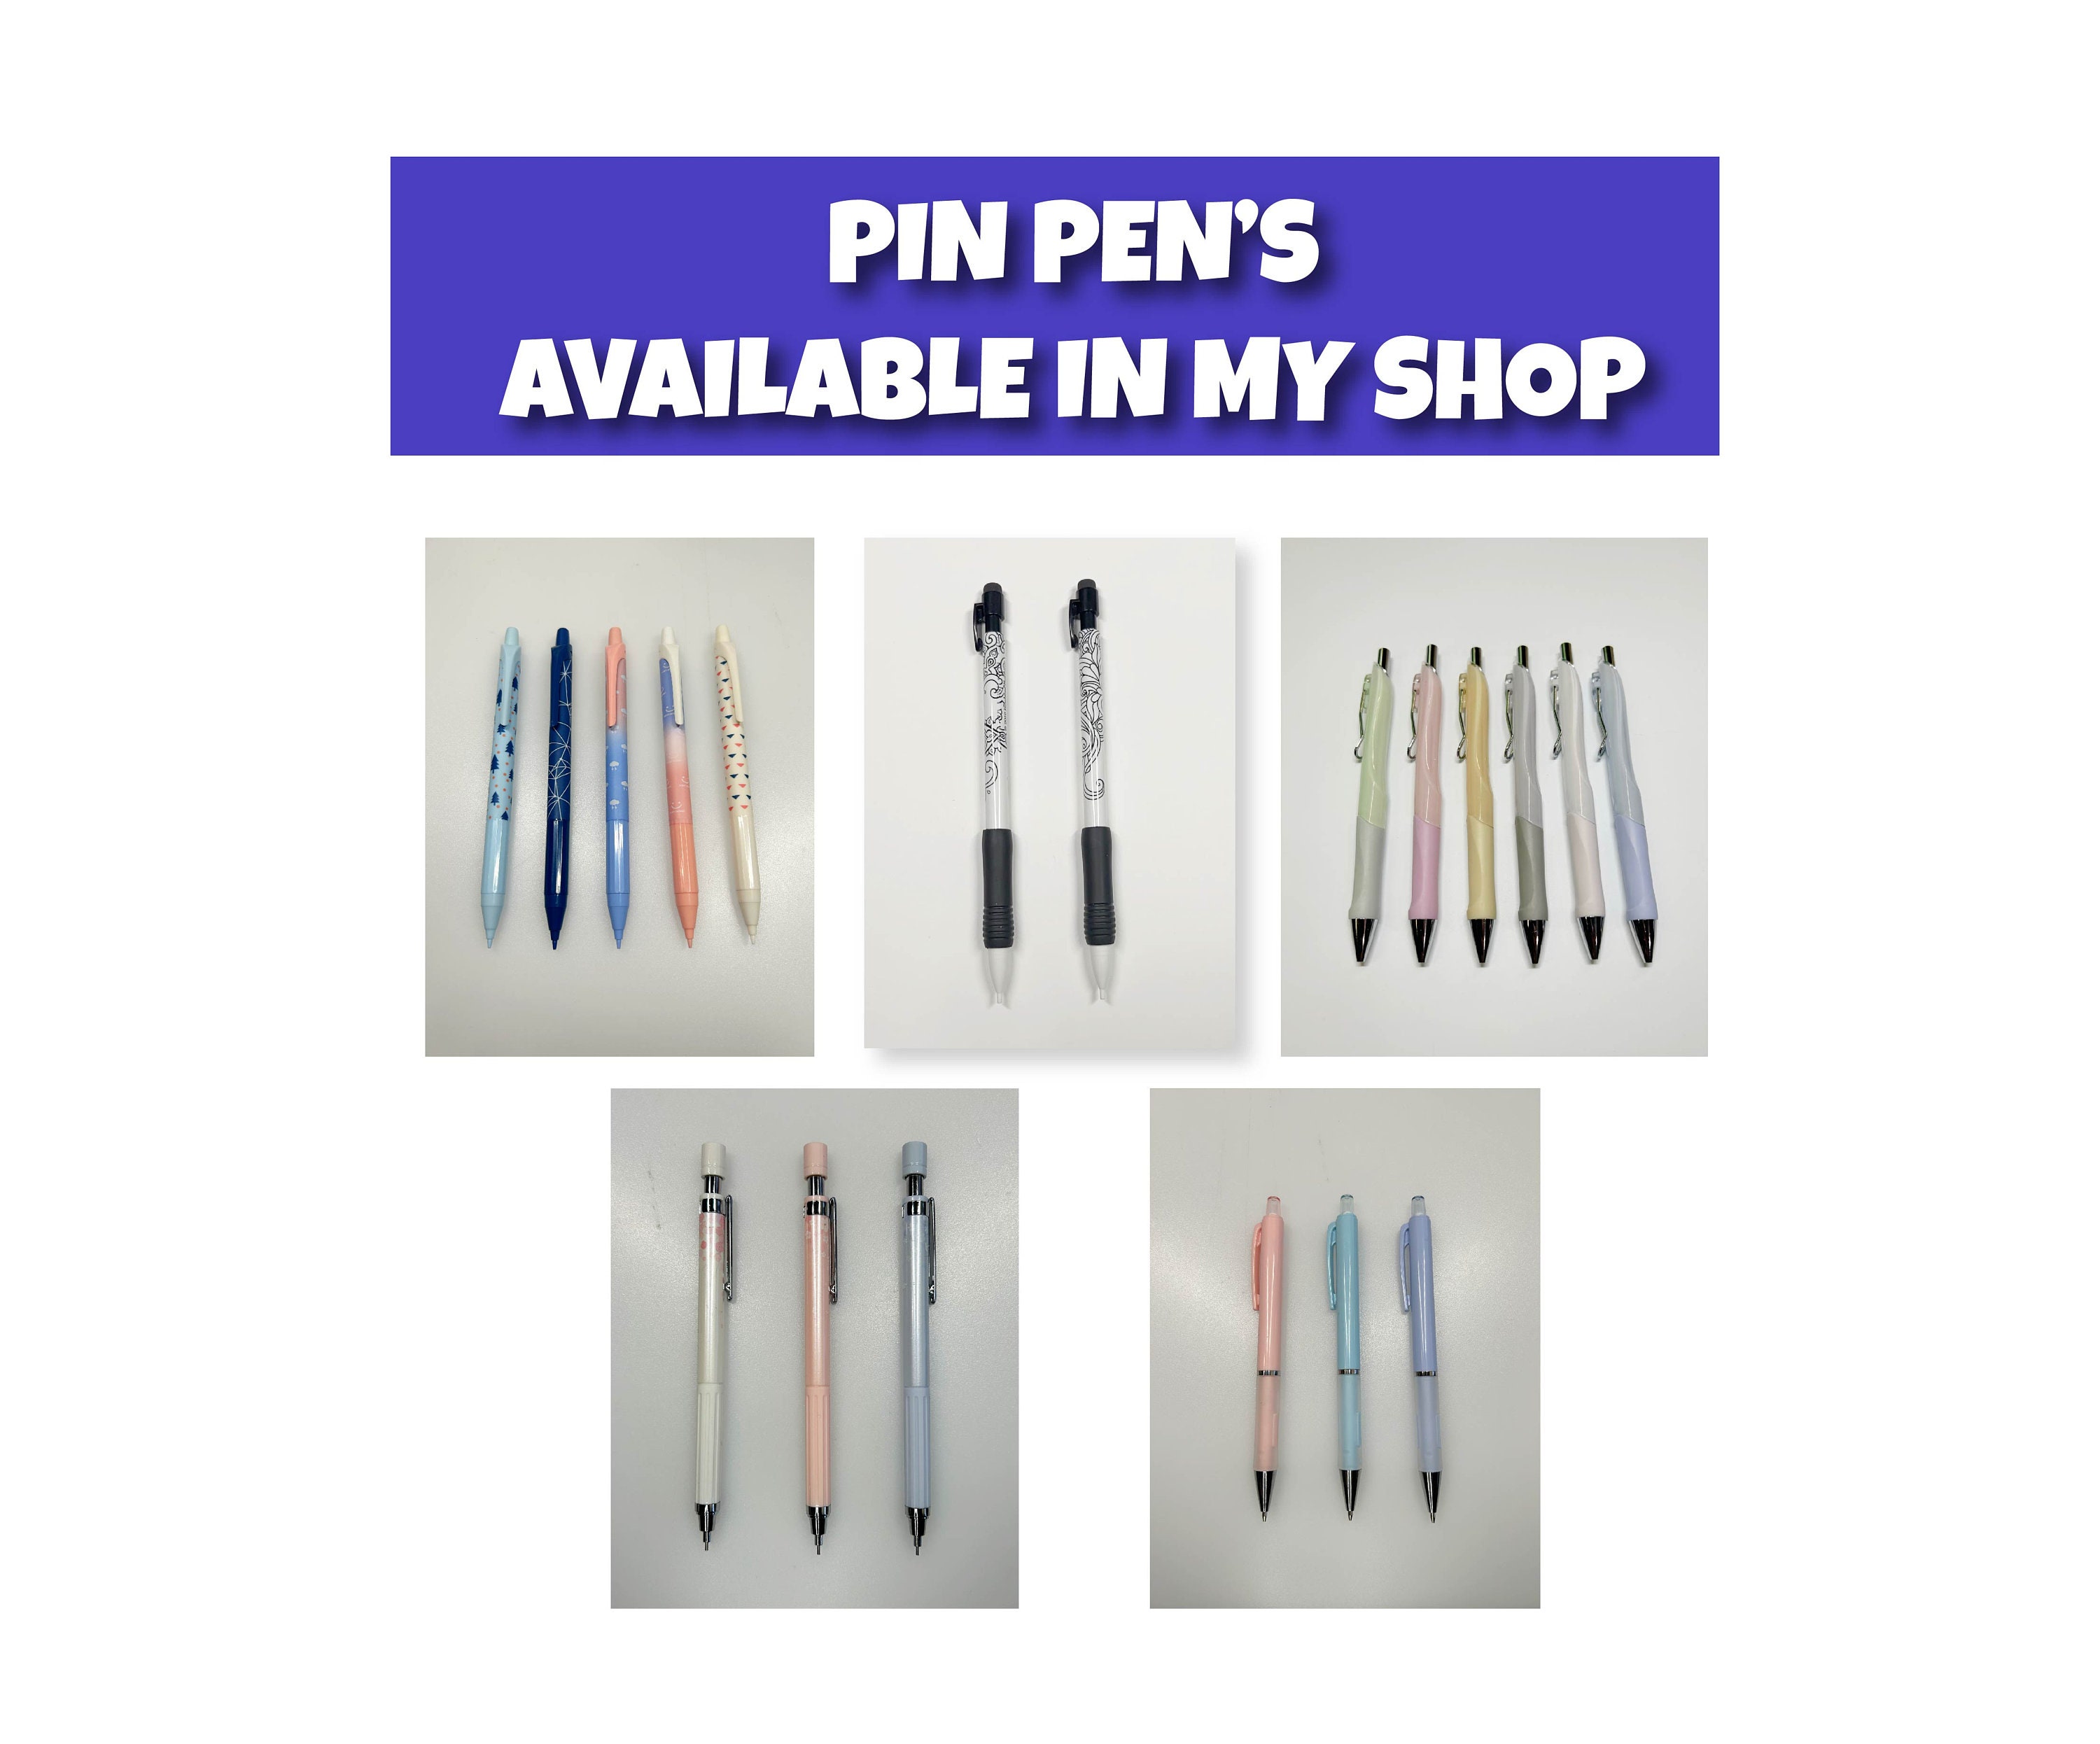 DIY weeding tool - Pin Pen or Air Release Pen #cricut #weeding #pinpen